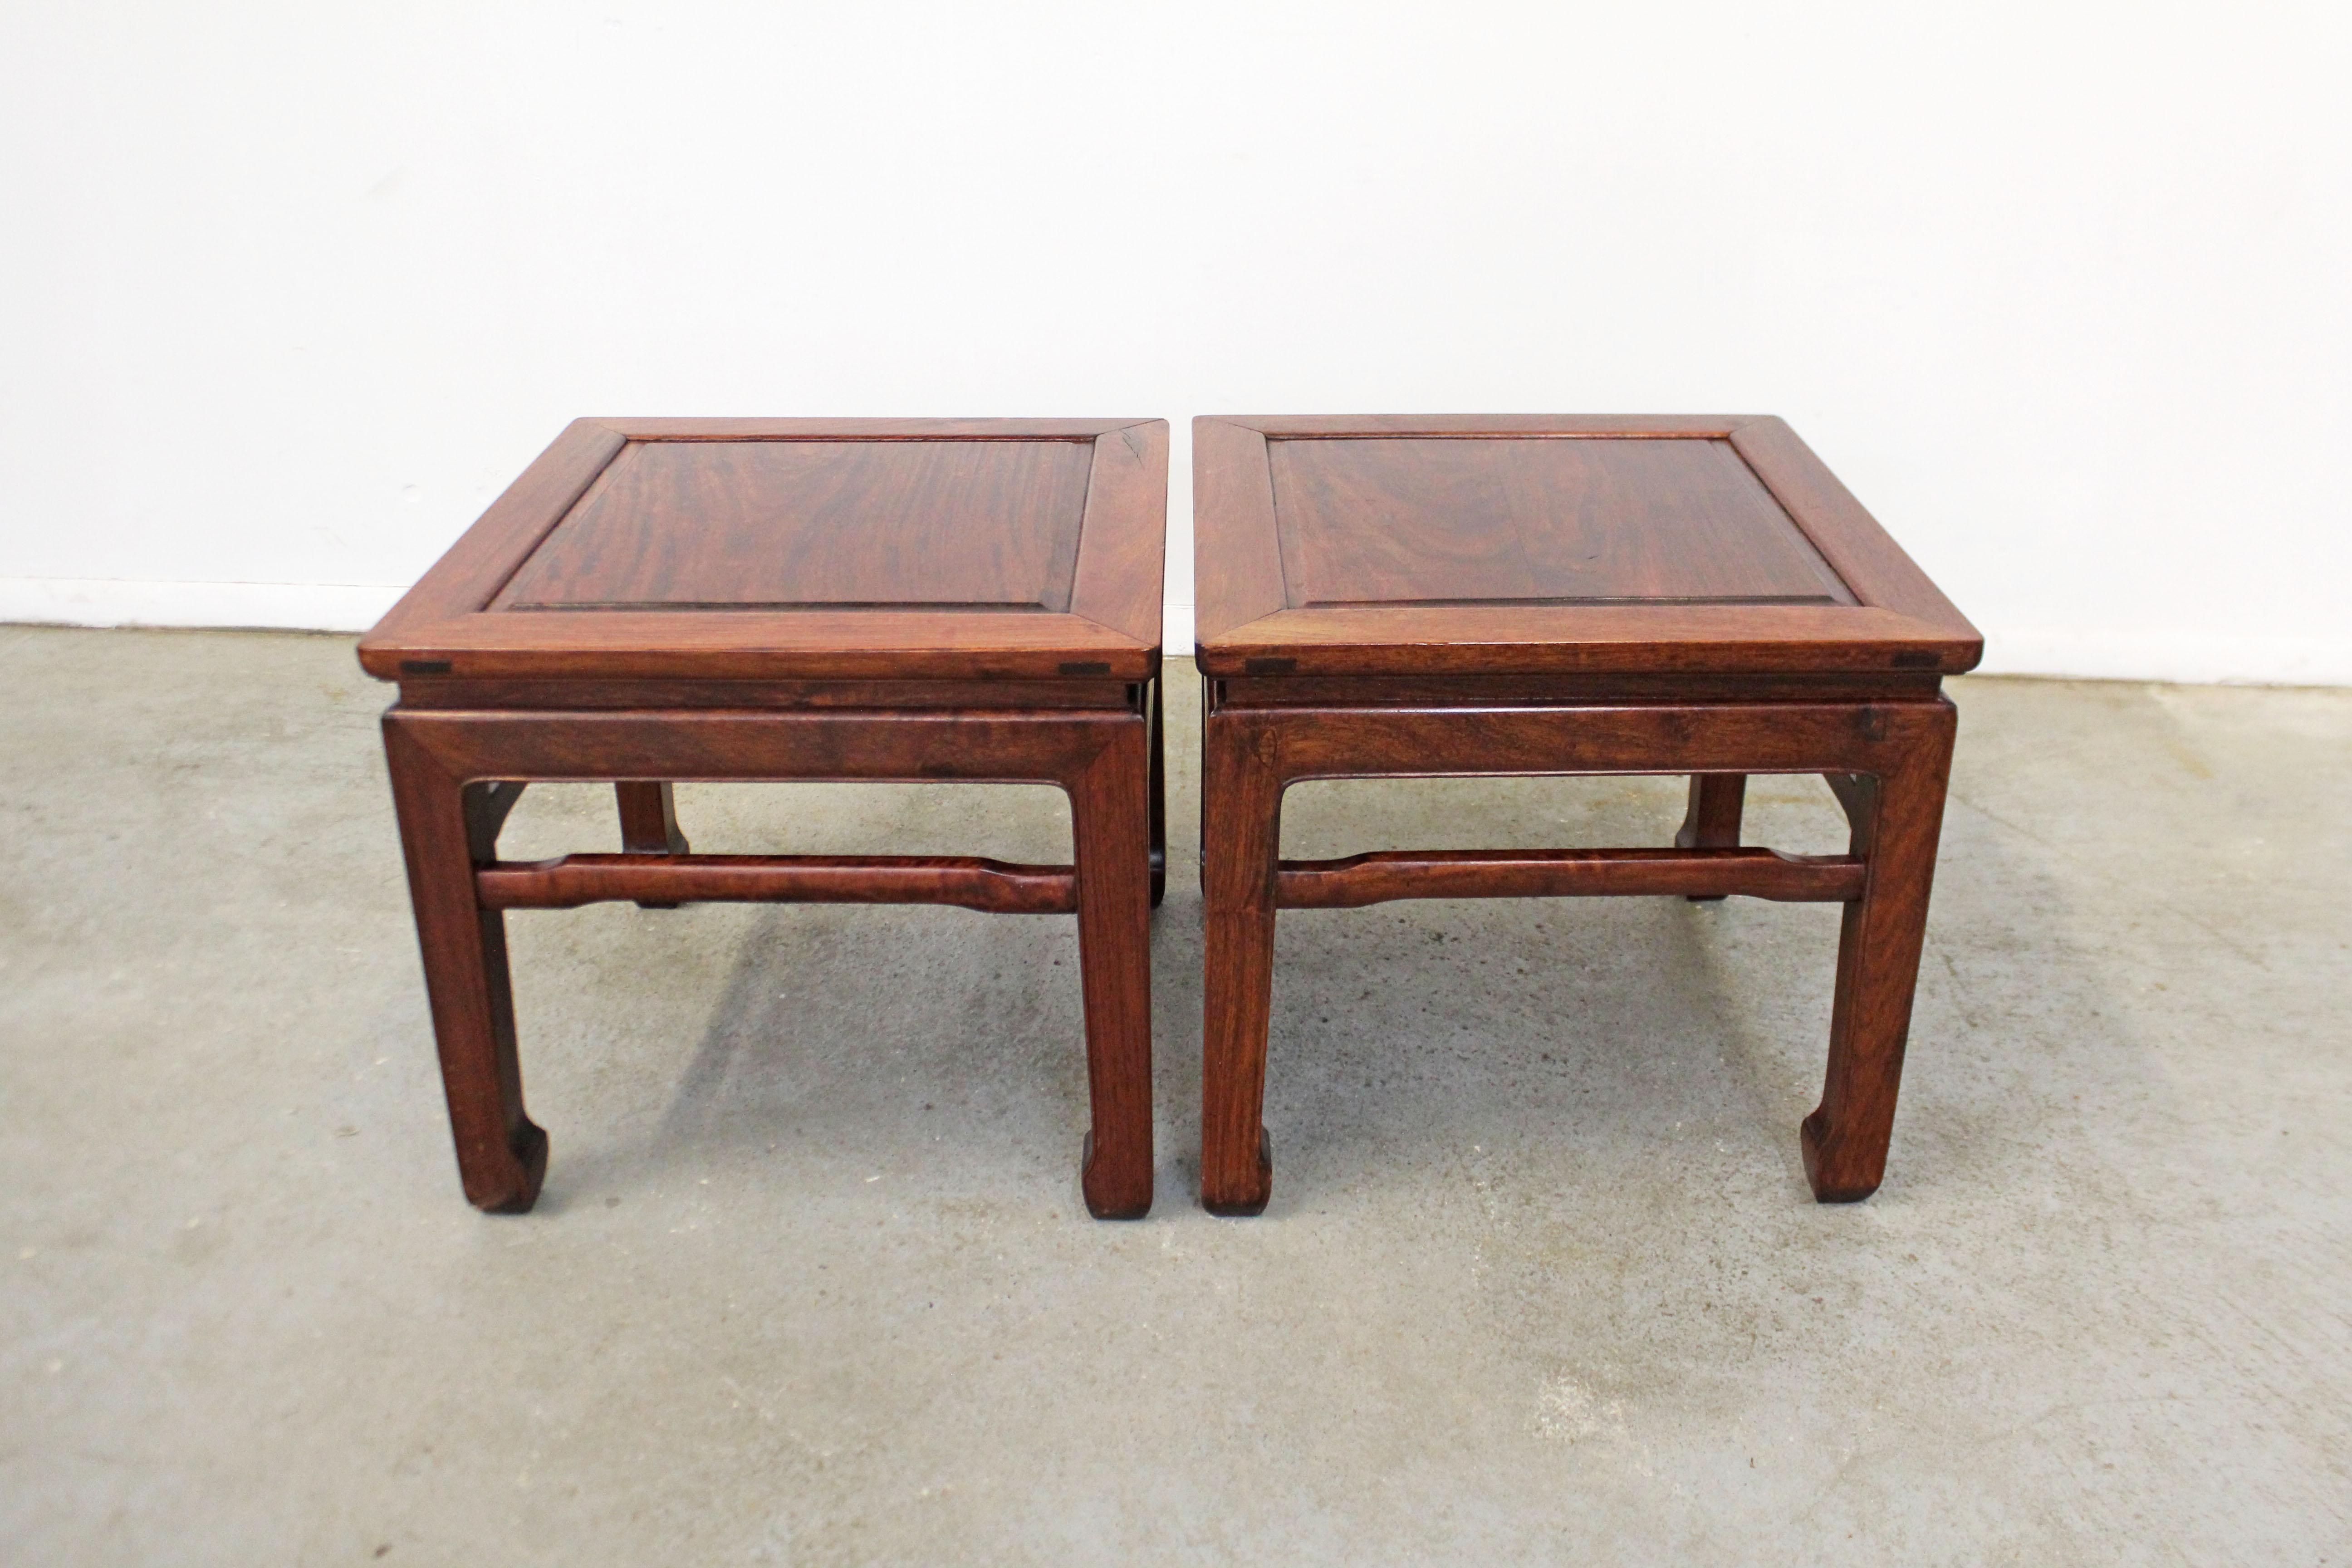 Angeboten wird ein Paar von Vintage Asian Modern Stil niedrigen Ende Tabellen. Sie sind aus Palisanderholz gefertigt. In sehr gutem Zustand mit leichter Oberflächenabnutzung und Chip (siehe Fotos). Sie sind unsigniert. 

Abmessungen: 
19